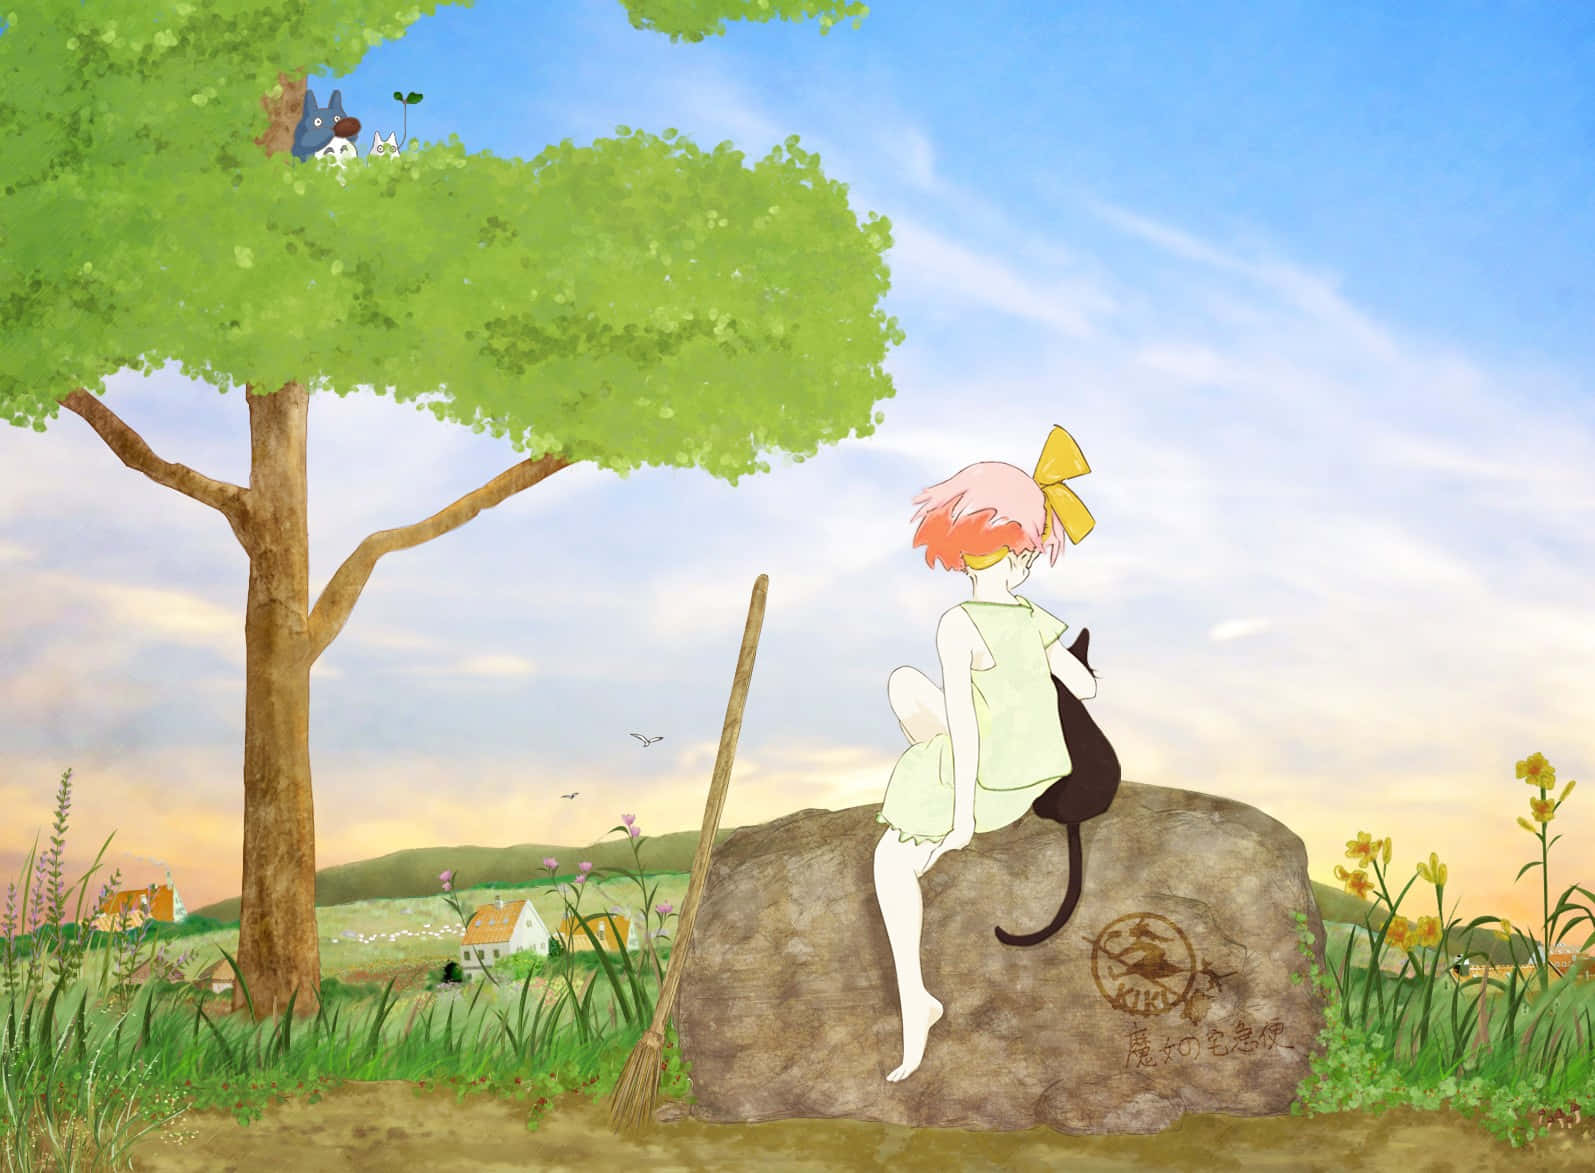 Percase Em Um Mundo Colorido E Lúdico Com Este Papel De Parede Para Desktop Estético Do Studio Ghibli! Papel de Parede